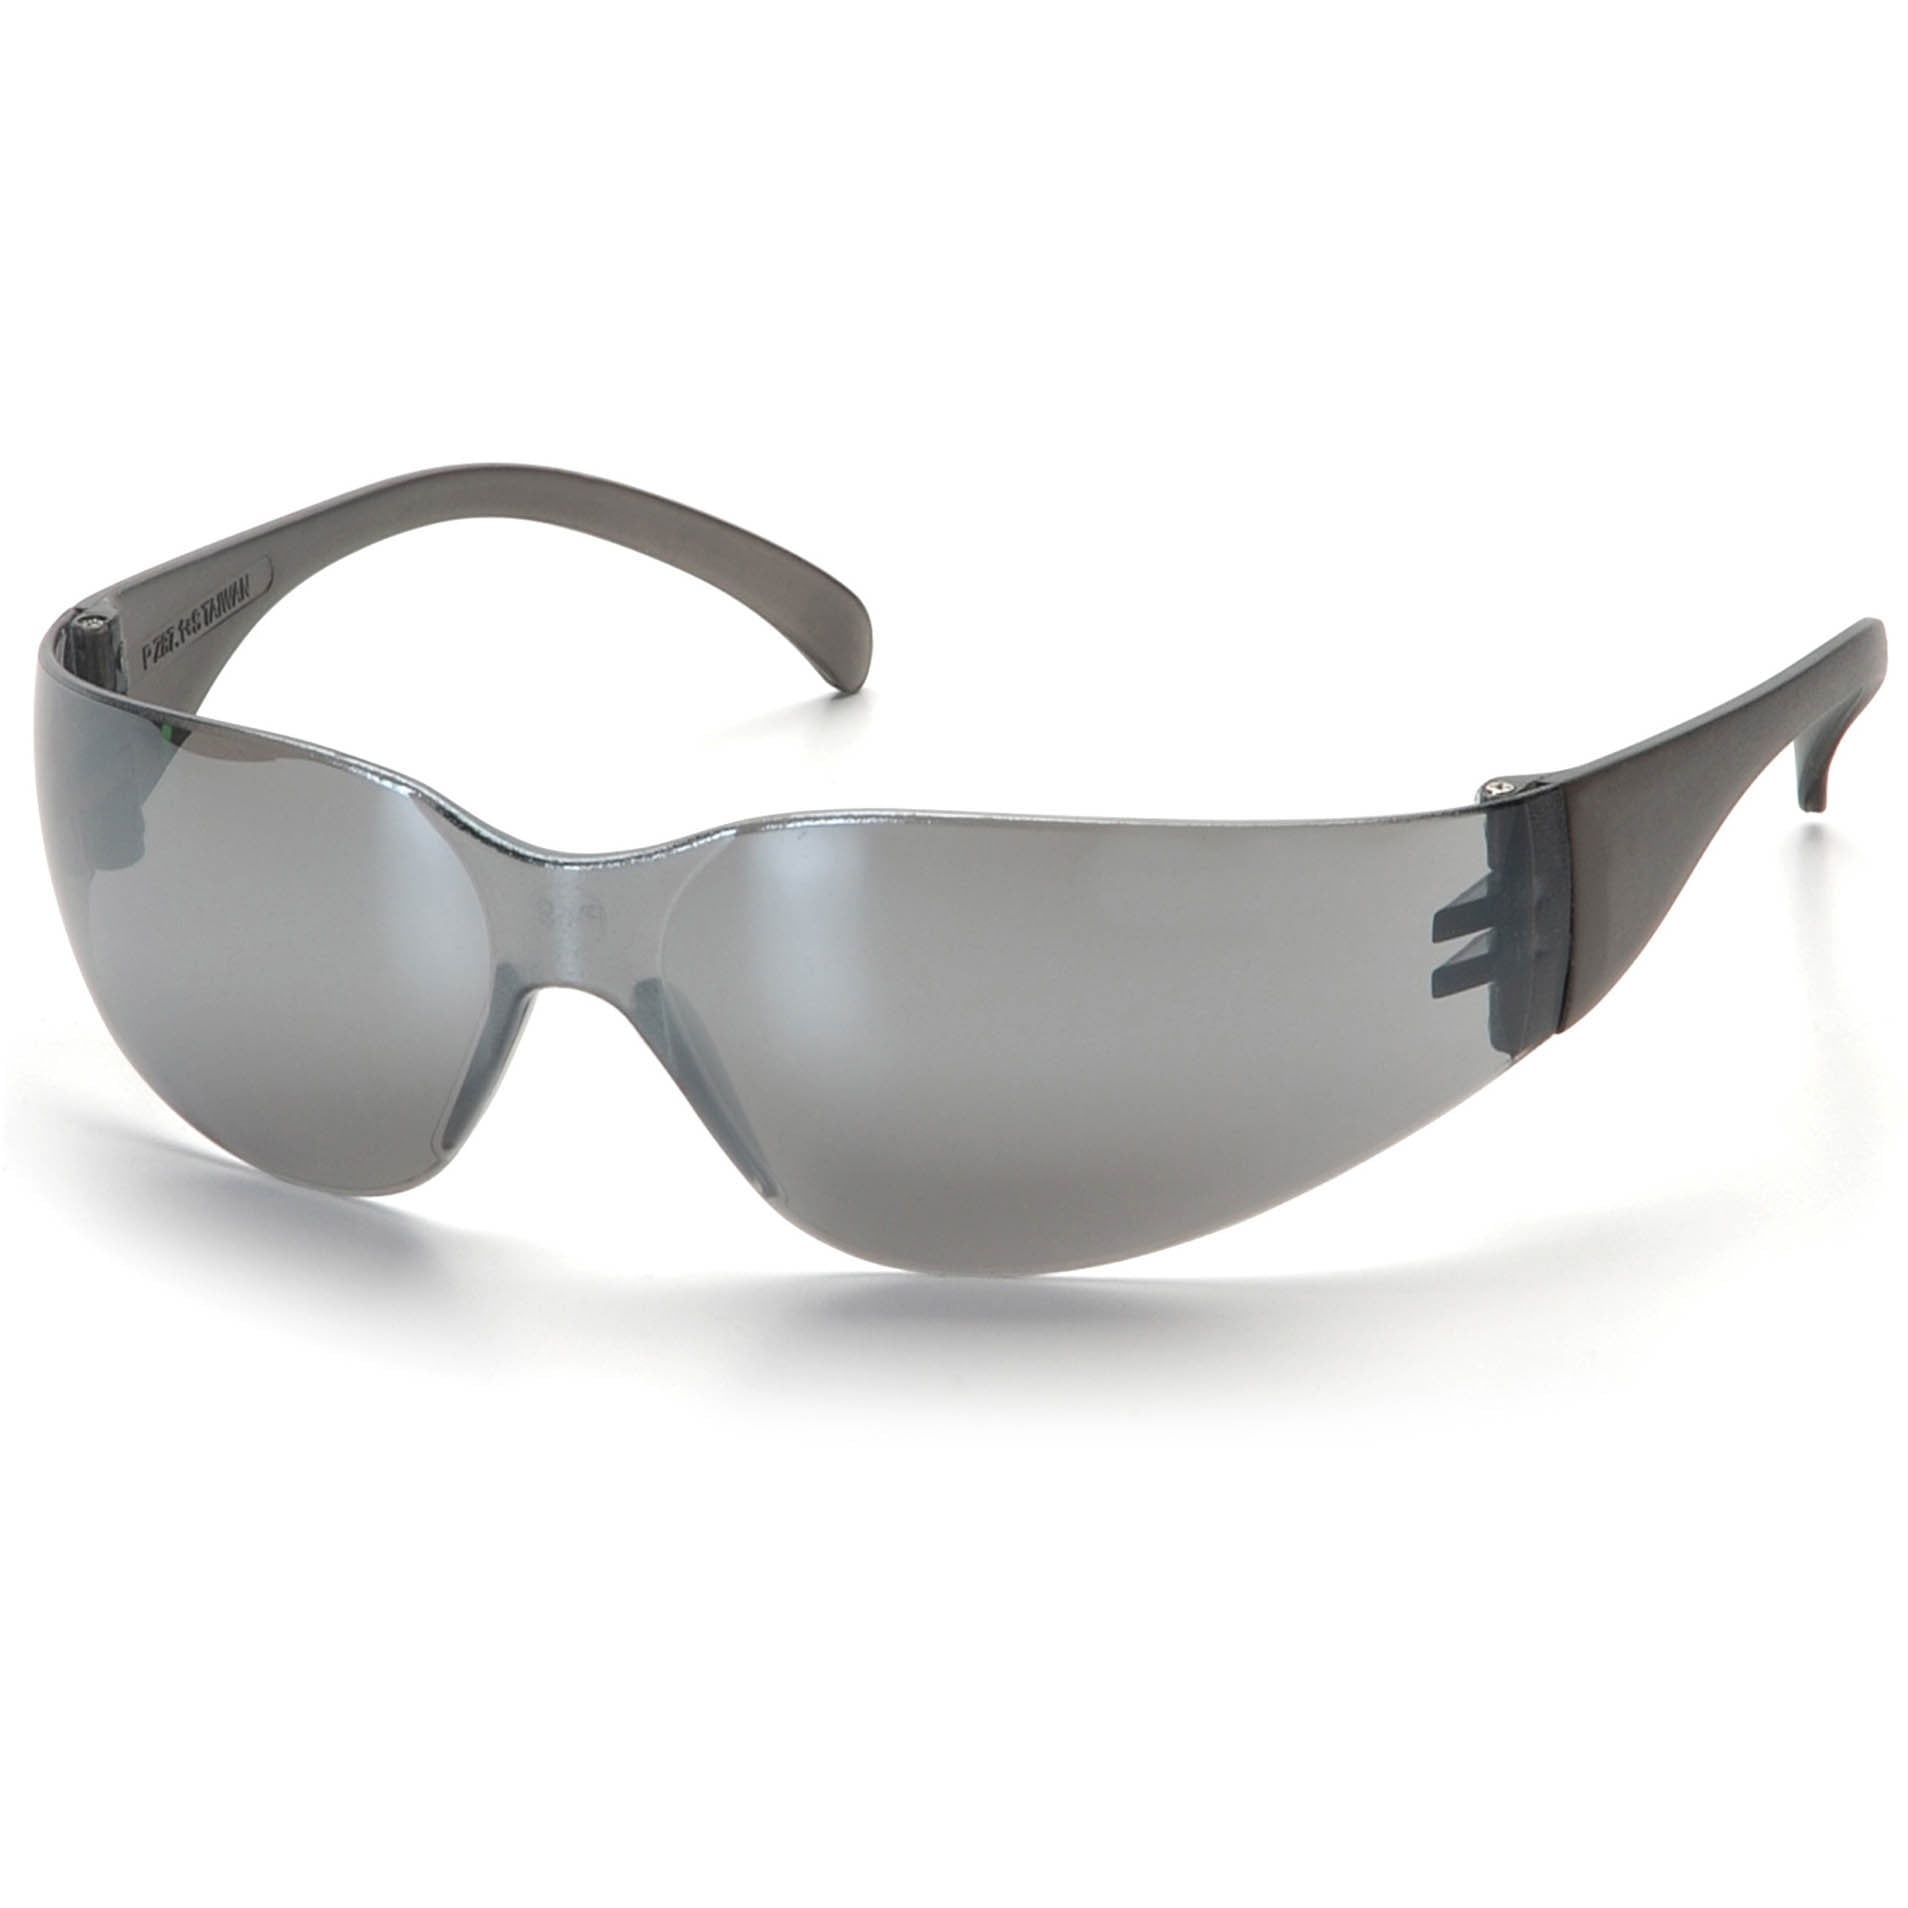 Silver glasses. Зеркально-серый стрелковые очки Pyramex Venture 2. Зеркально-серый стрелковые очки Pyramex Venture. Очки серебристые. Серые солнцезащитные очки.